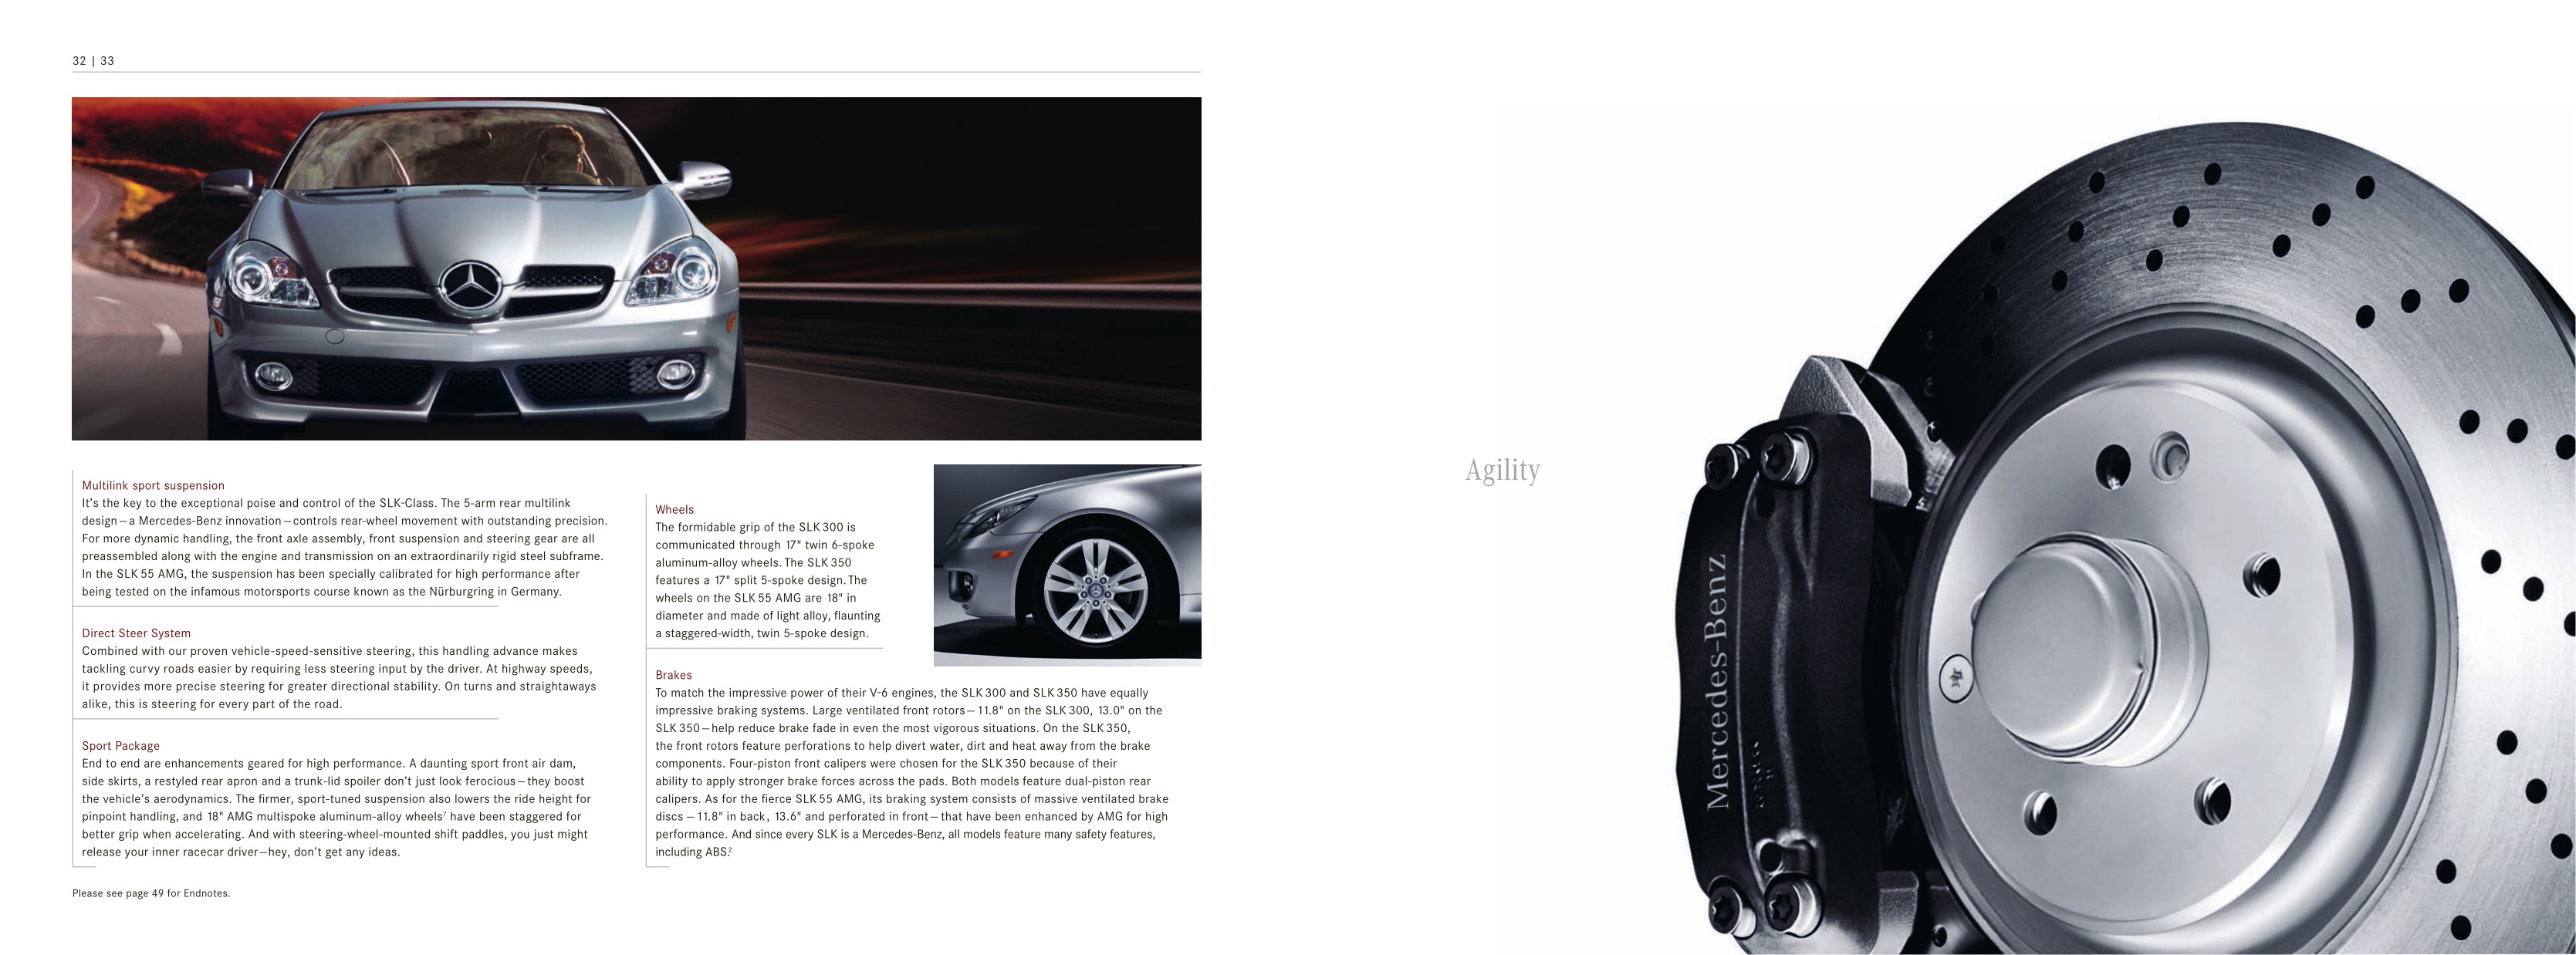 2009 Mercedes-Benz SLK Brochure Page 9